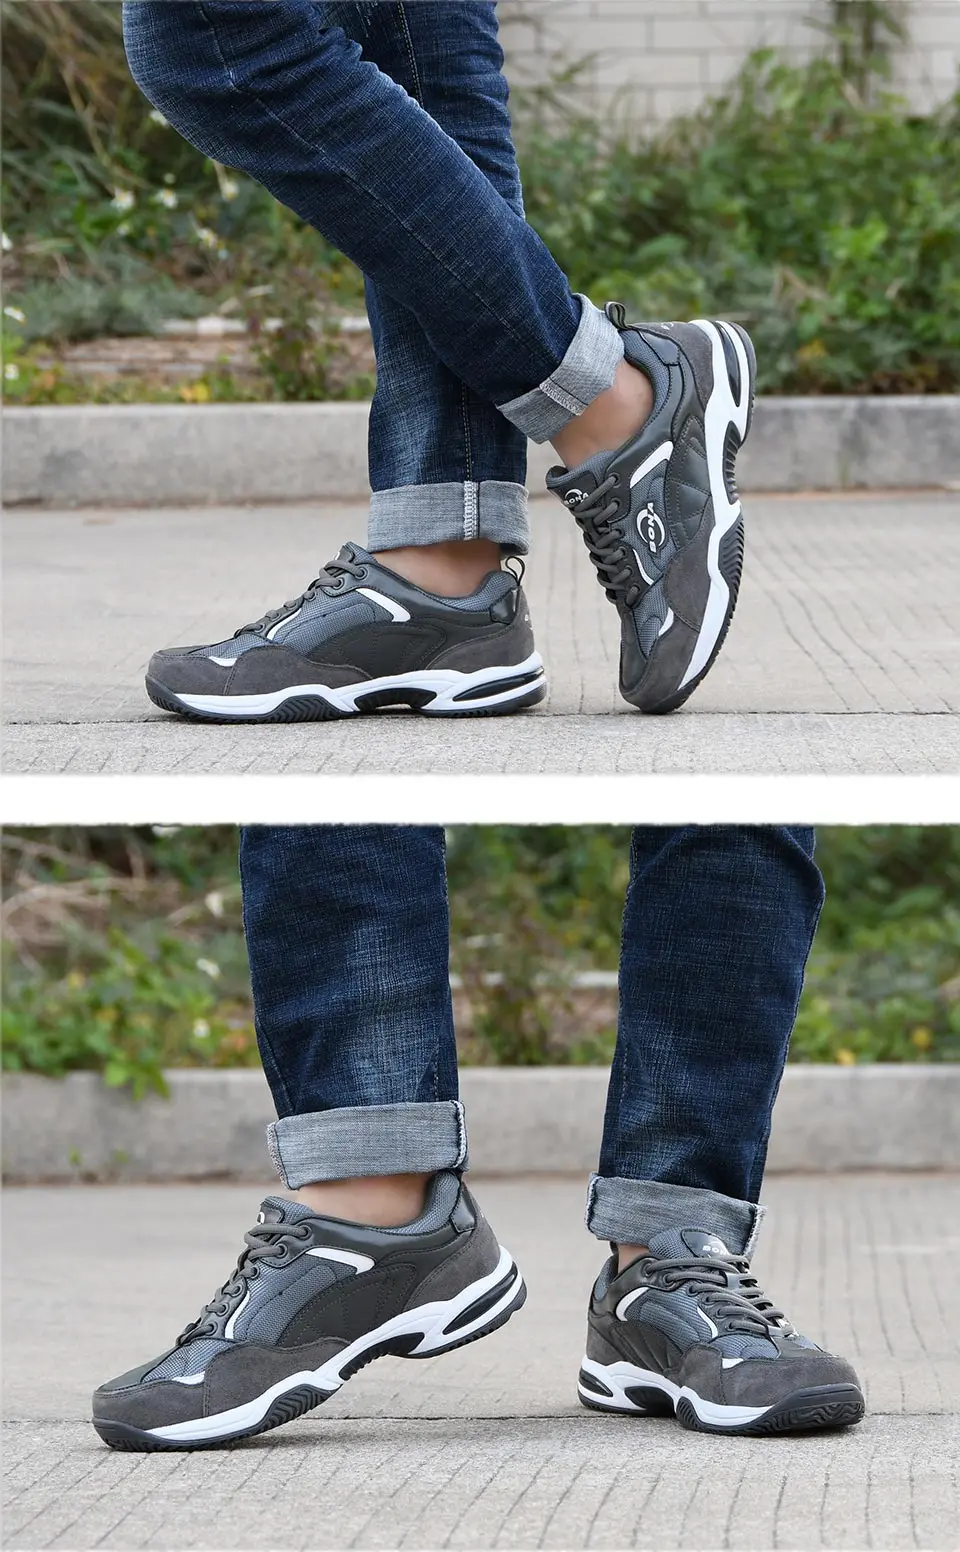 BONA/Новинка года; дизайнерская Модная стильная обувь; мужские воздухопроницаемые кроссовки; уличные мужские повседневные вулканизированные туфли; удобные Трендовые туфли